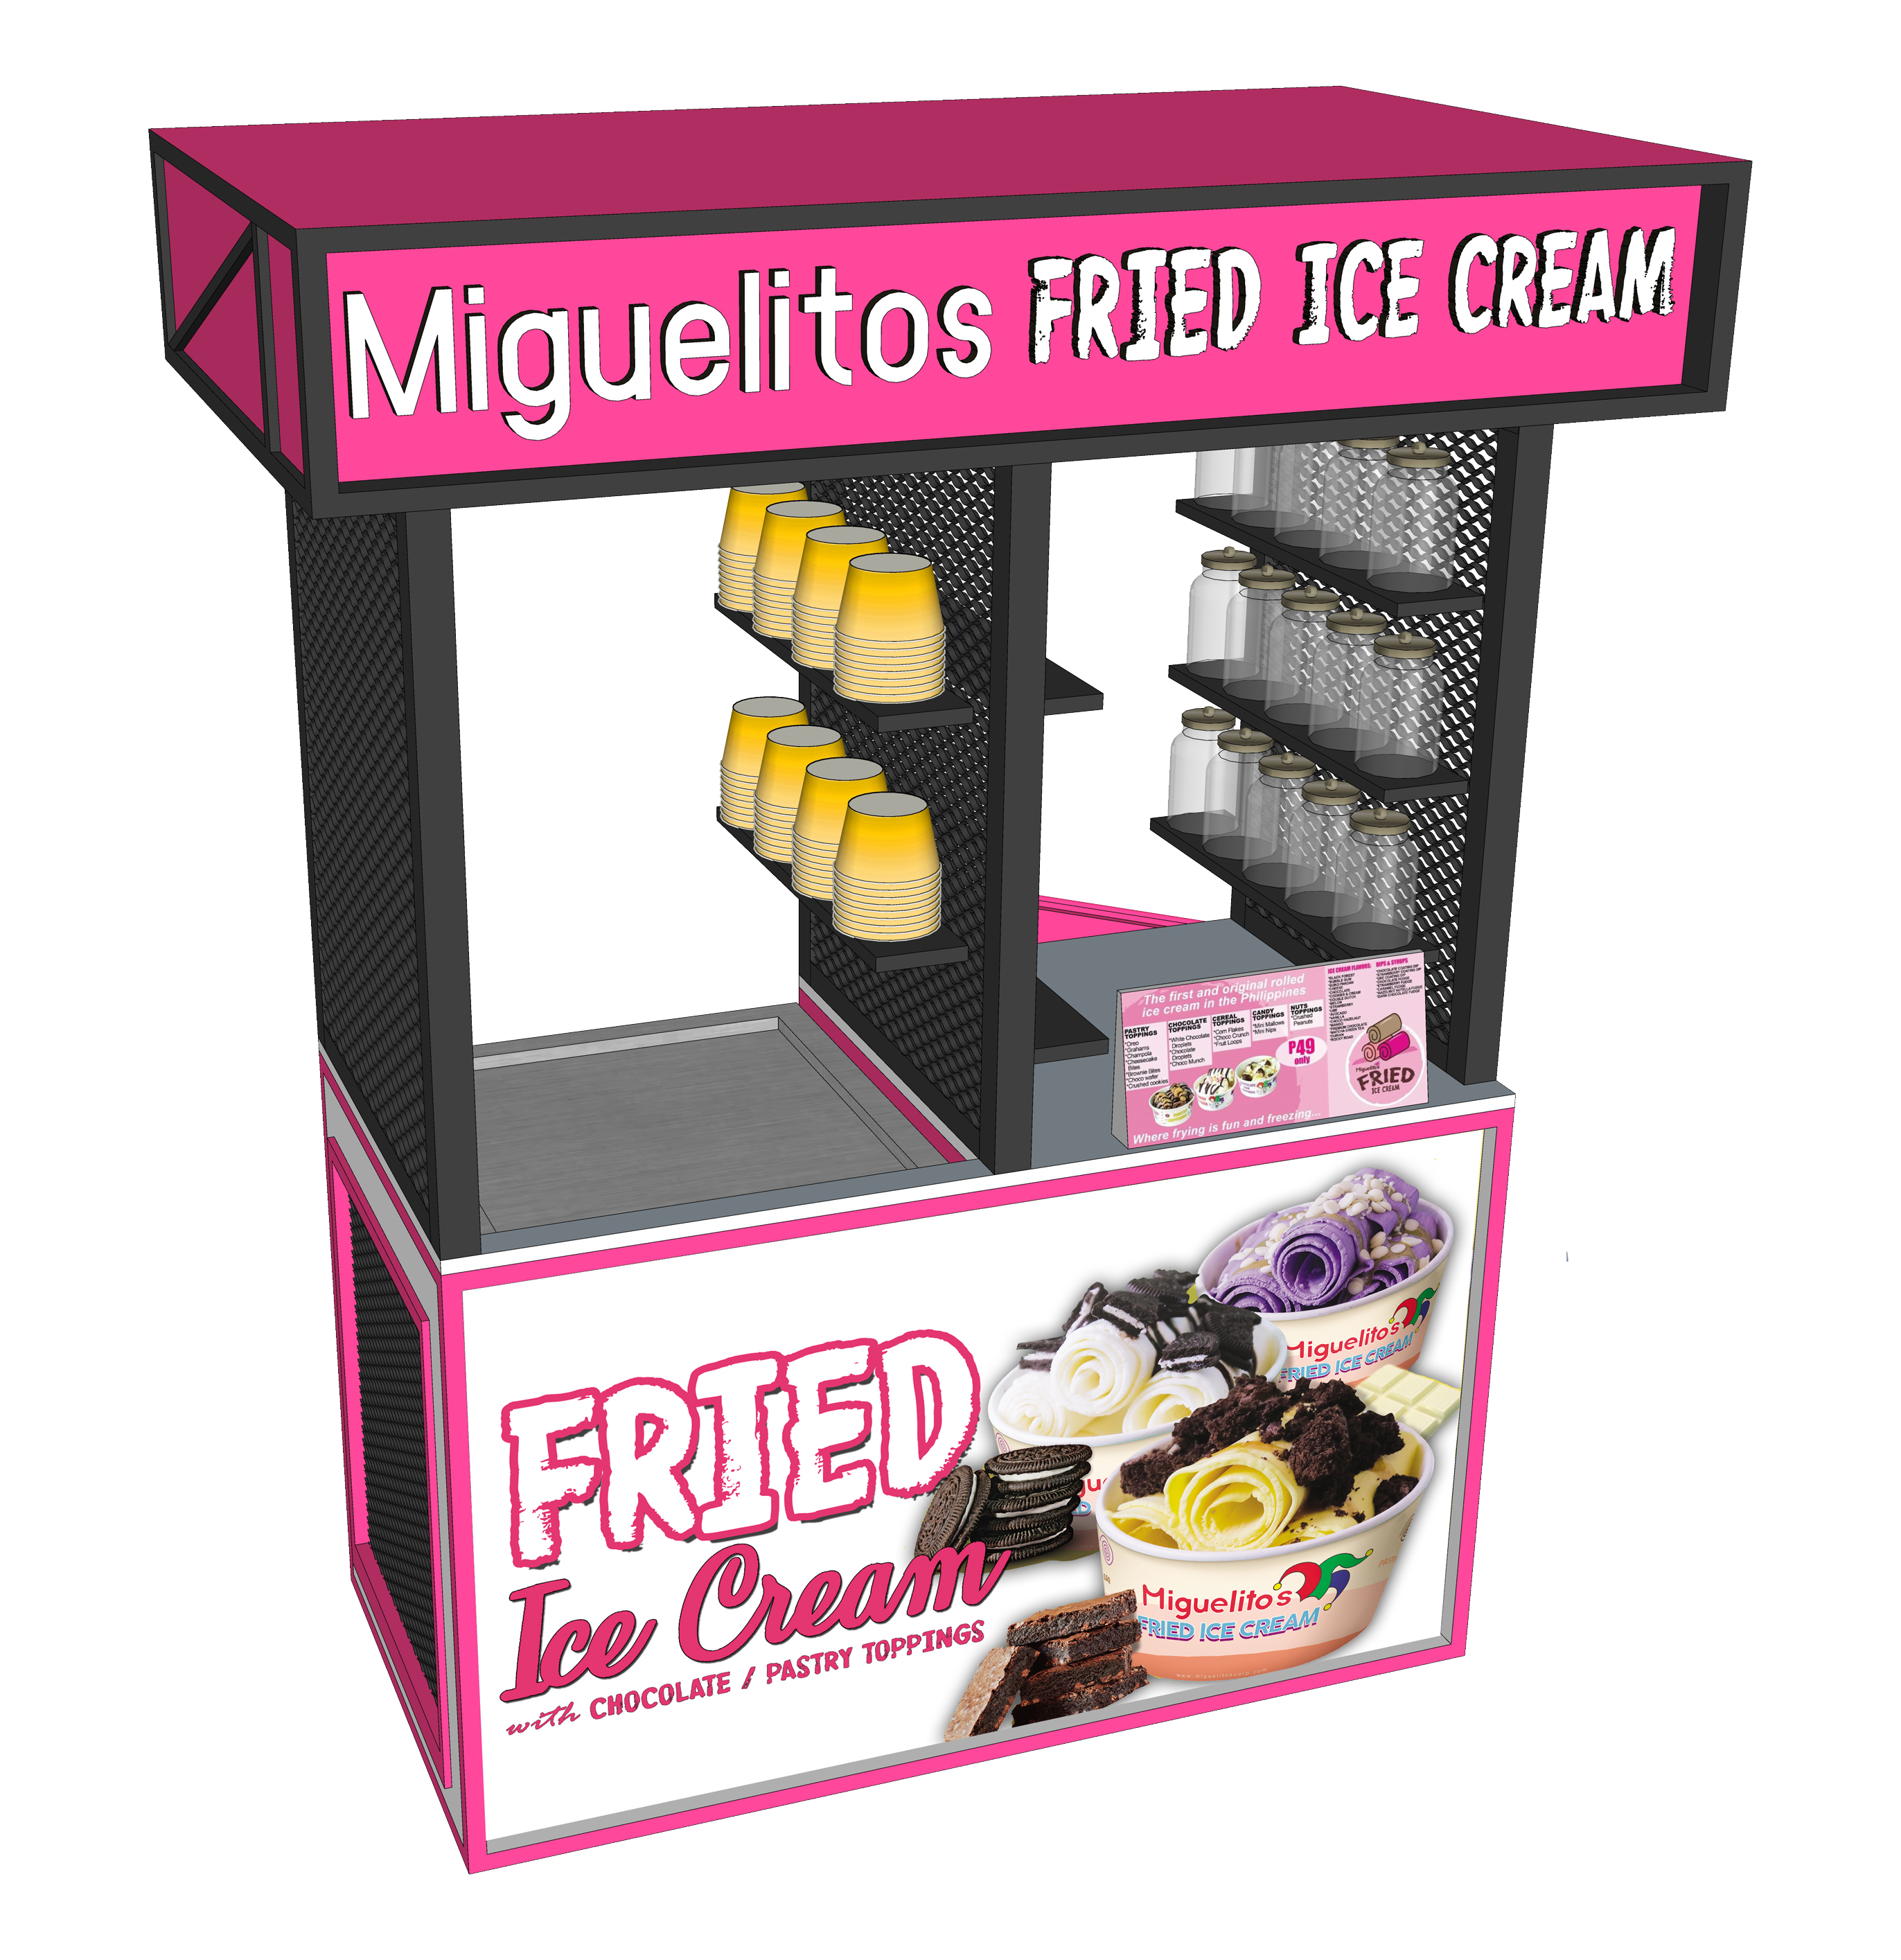 Miguelitos Fried Ice Cream